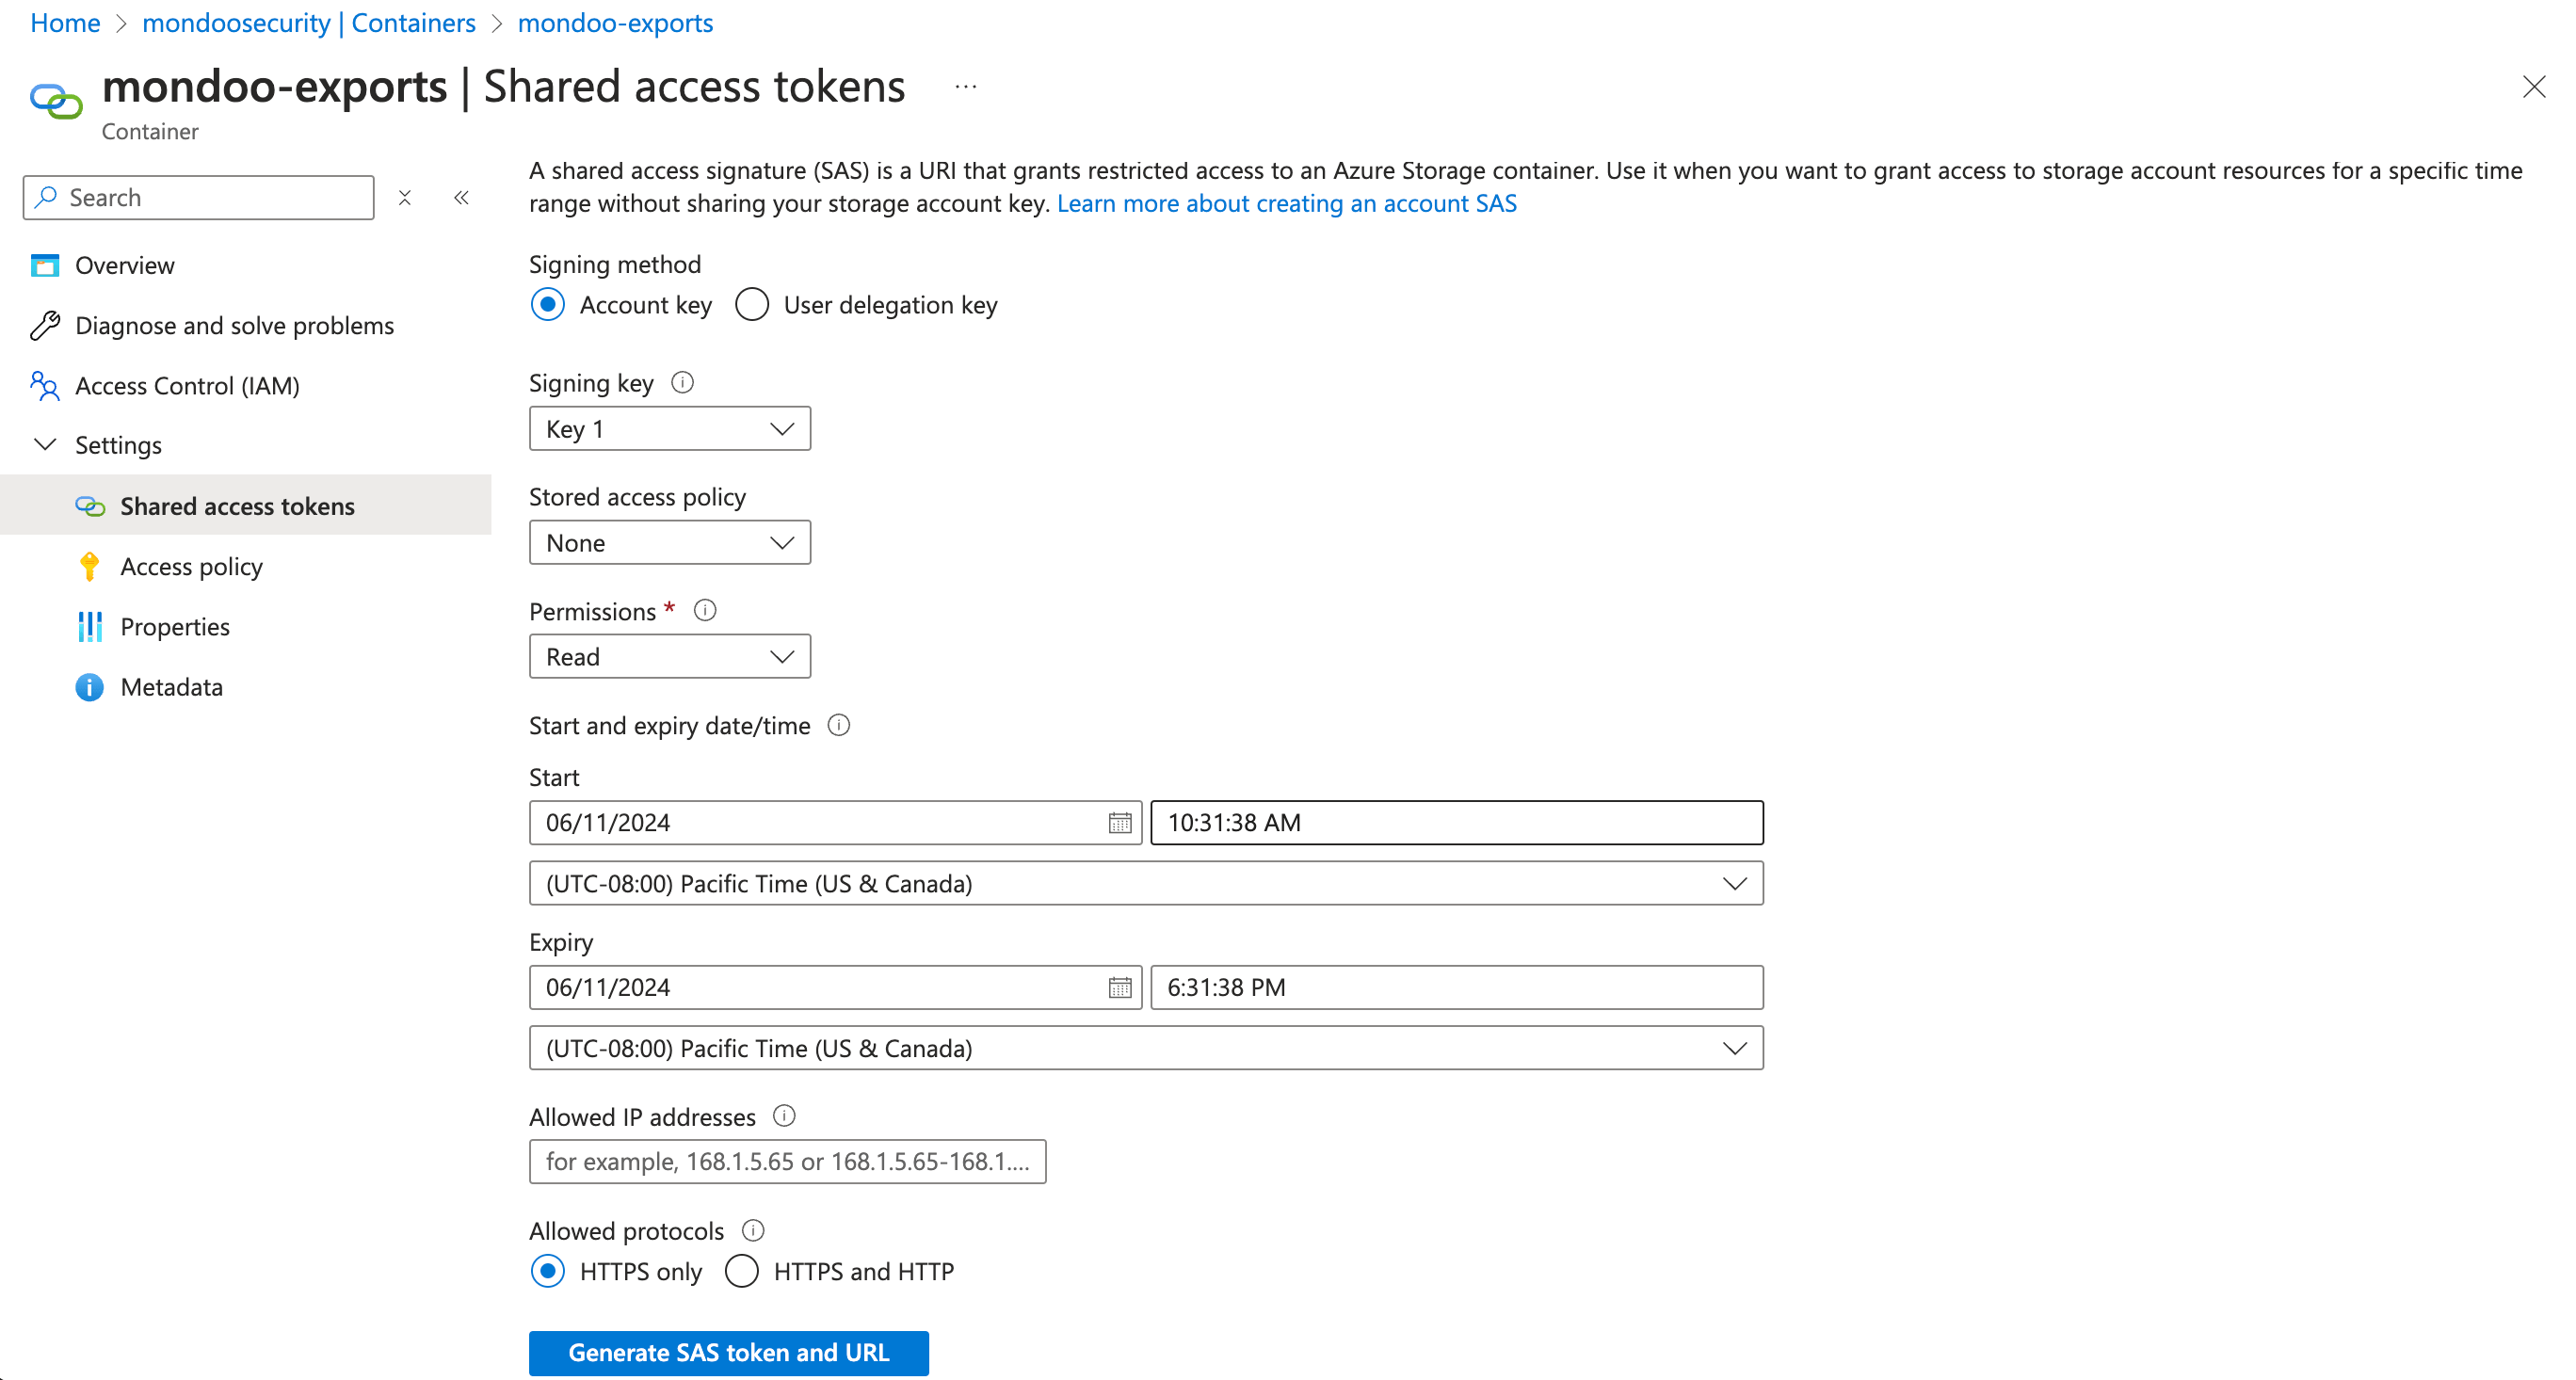 Add a shared access token in Azure